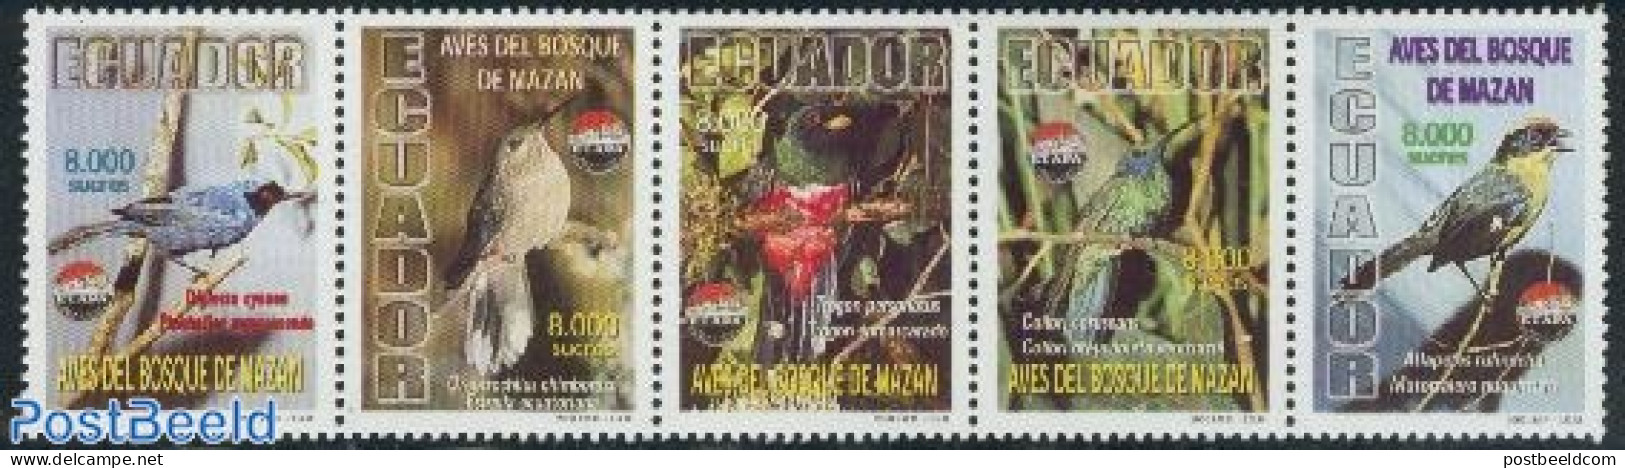 Ecuador 2000 ETAPA, Birds 5v[::::], Mint NH, Nature - Birds - Ecuador